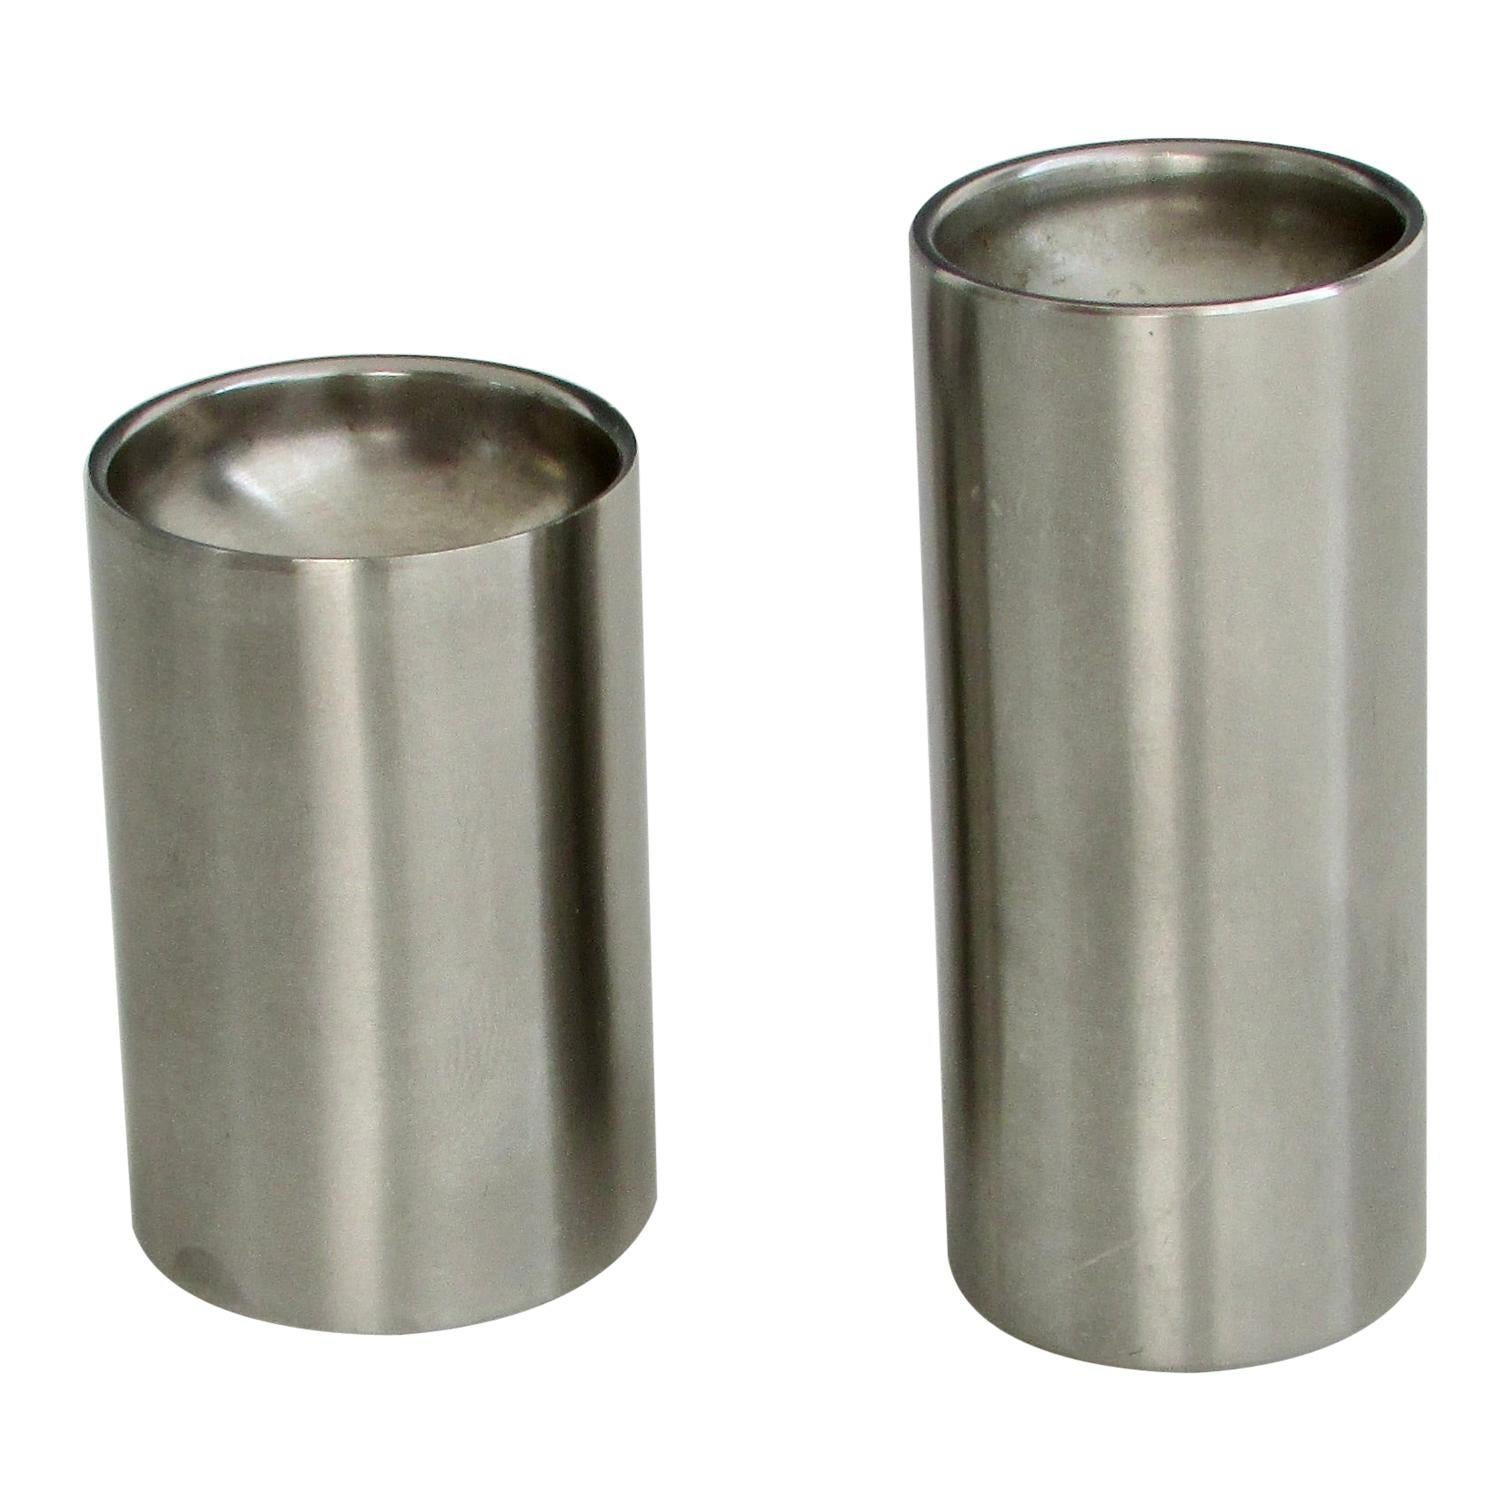 Arne Jacobsen for Stelton Stainless Steel Cylinder Salt Pepper Shakers Denmark